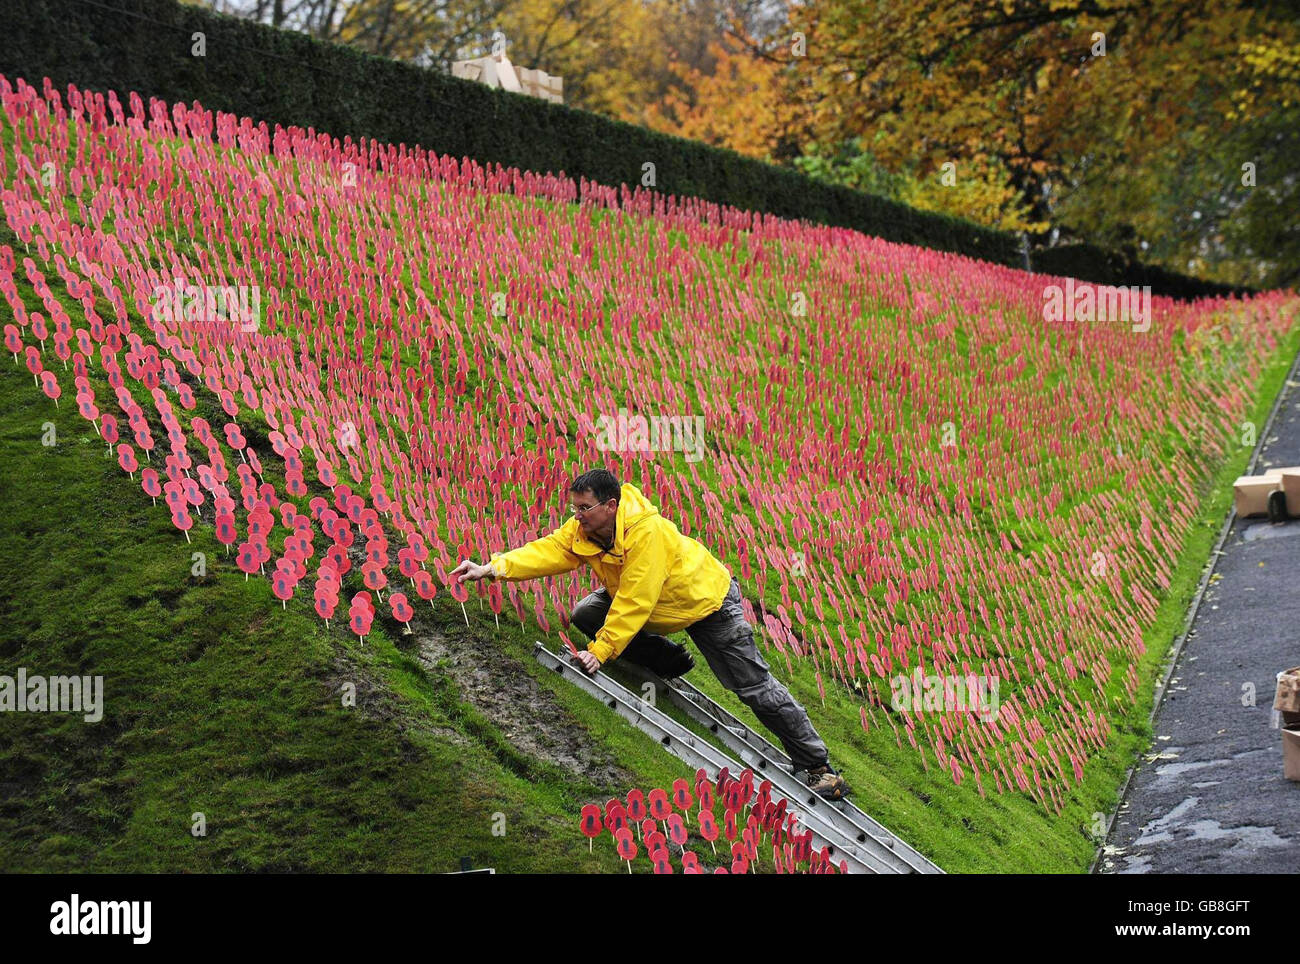 Ein Mohn-Feld, das von Teams der British Legion gepflanzt wurde, gibt den Grasbänken eines Feldes in der Region Flandern in der Nähe des Menin-Tores in Ypern, Belgien, Farbe. Stockfoto